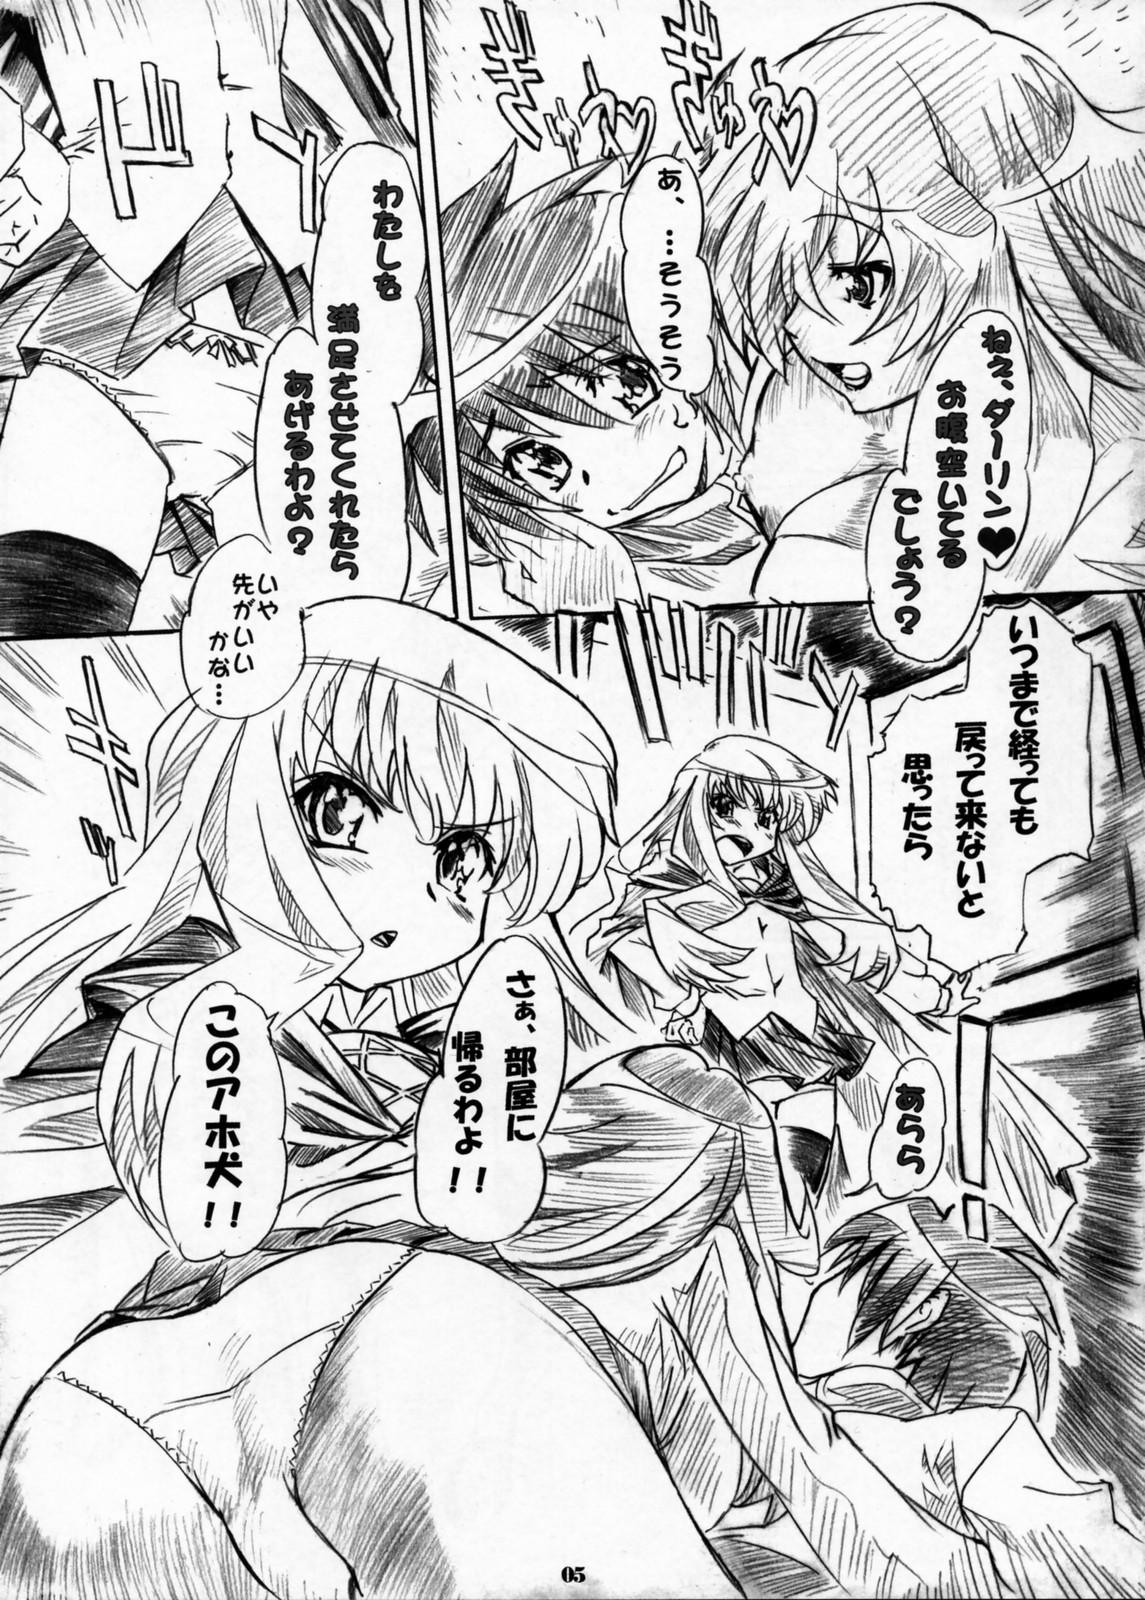 Porno Kizoku Gokuraku - Zero no tsukaima Gorgeous - Page 4